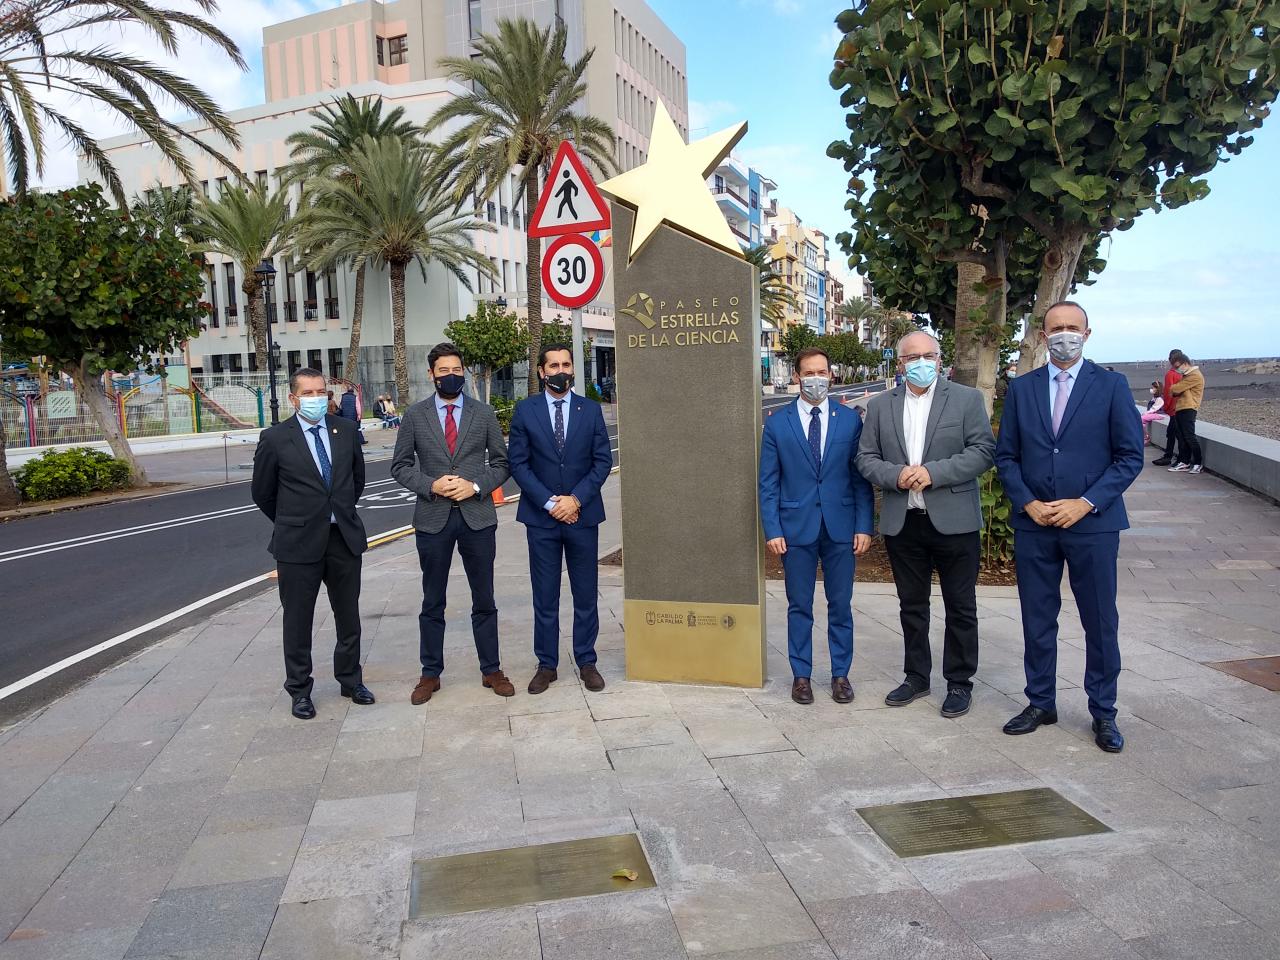 Autoridades políticas que han acudido a la inauguración del Paseo de las Estrellas de la Ciencia de La Palma. Crédito: Aarón García Botín/IAC